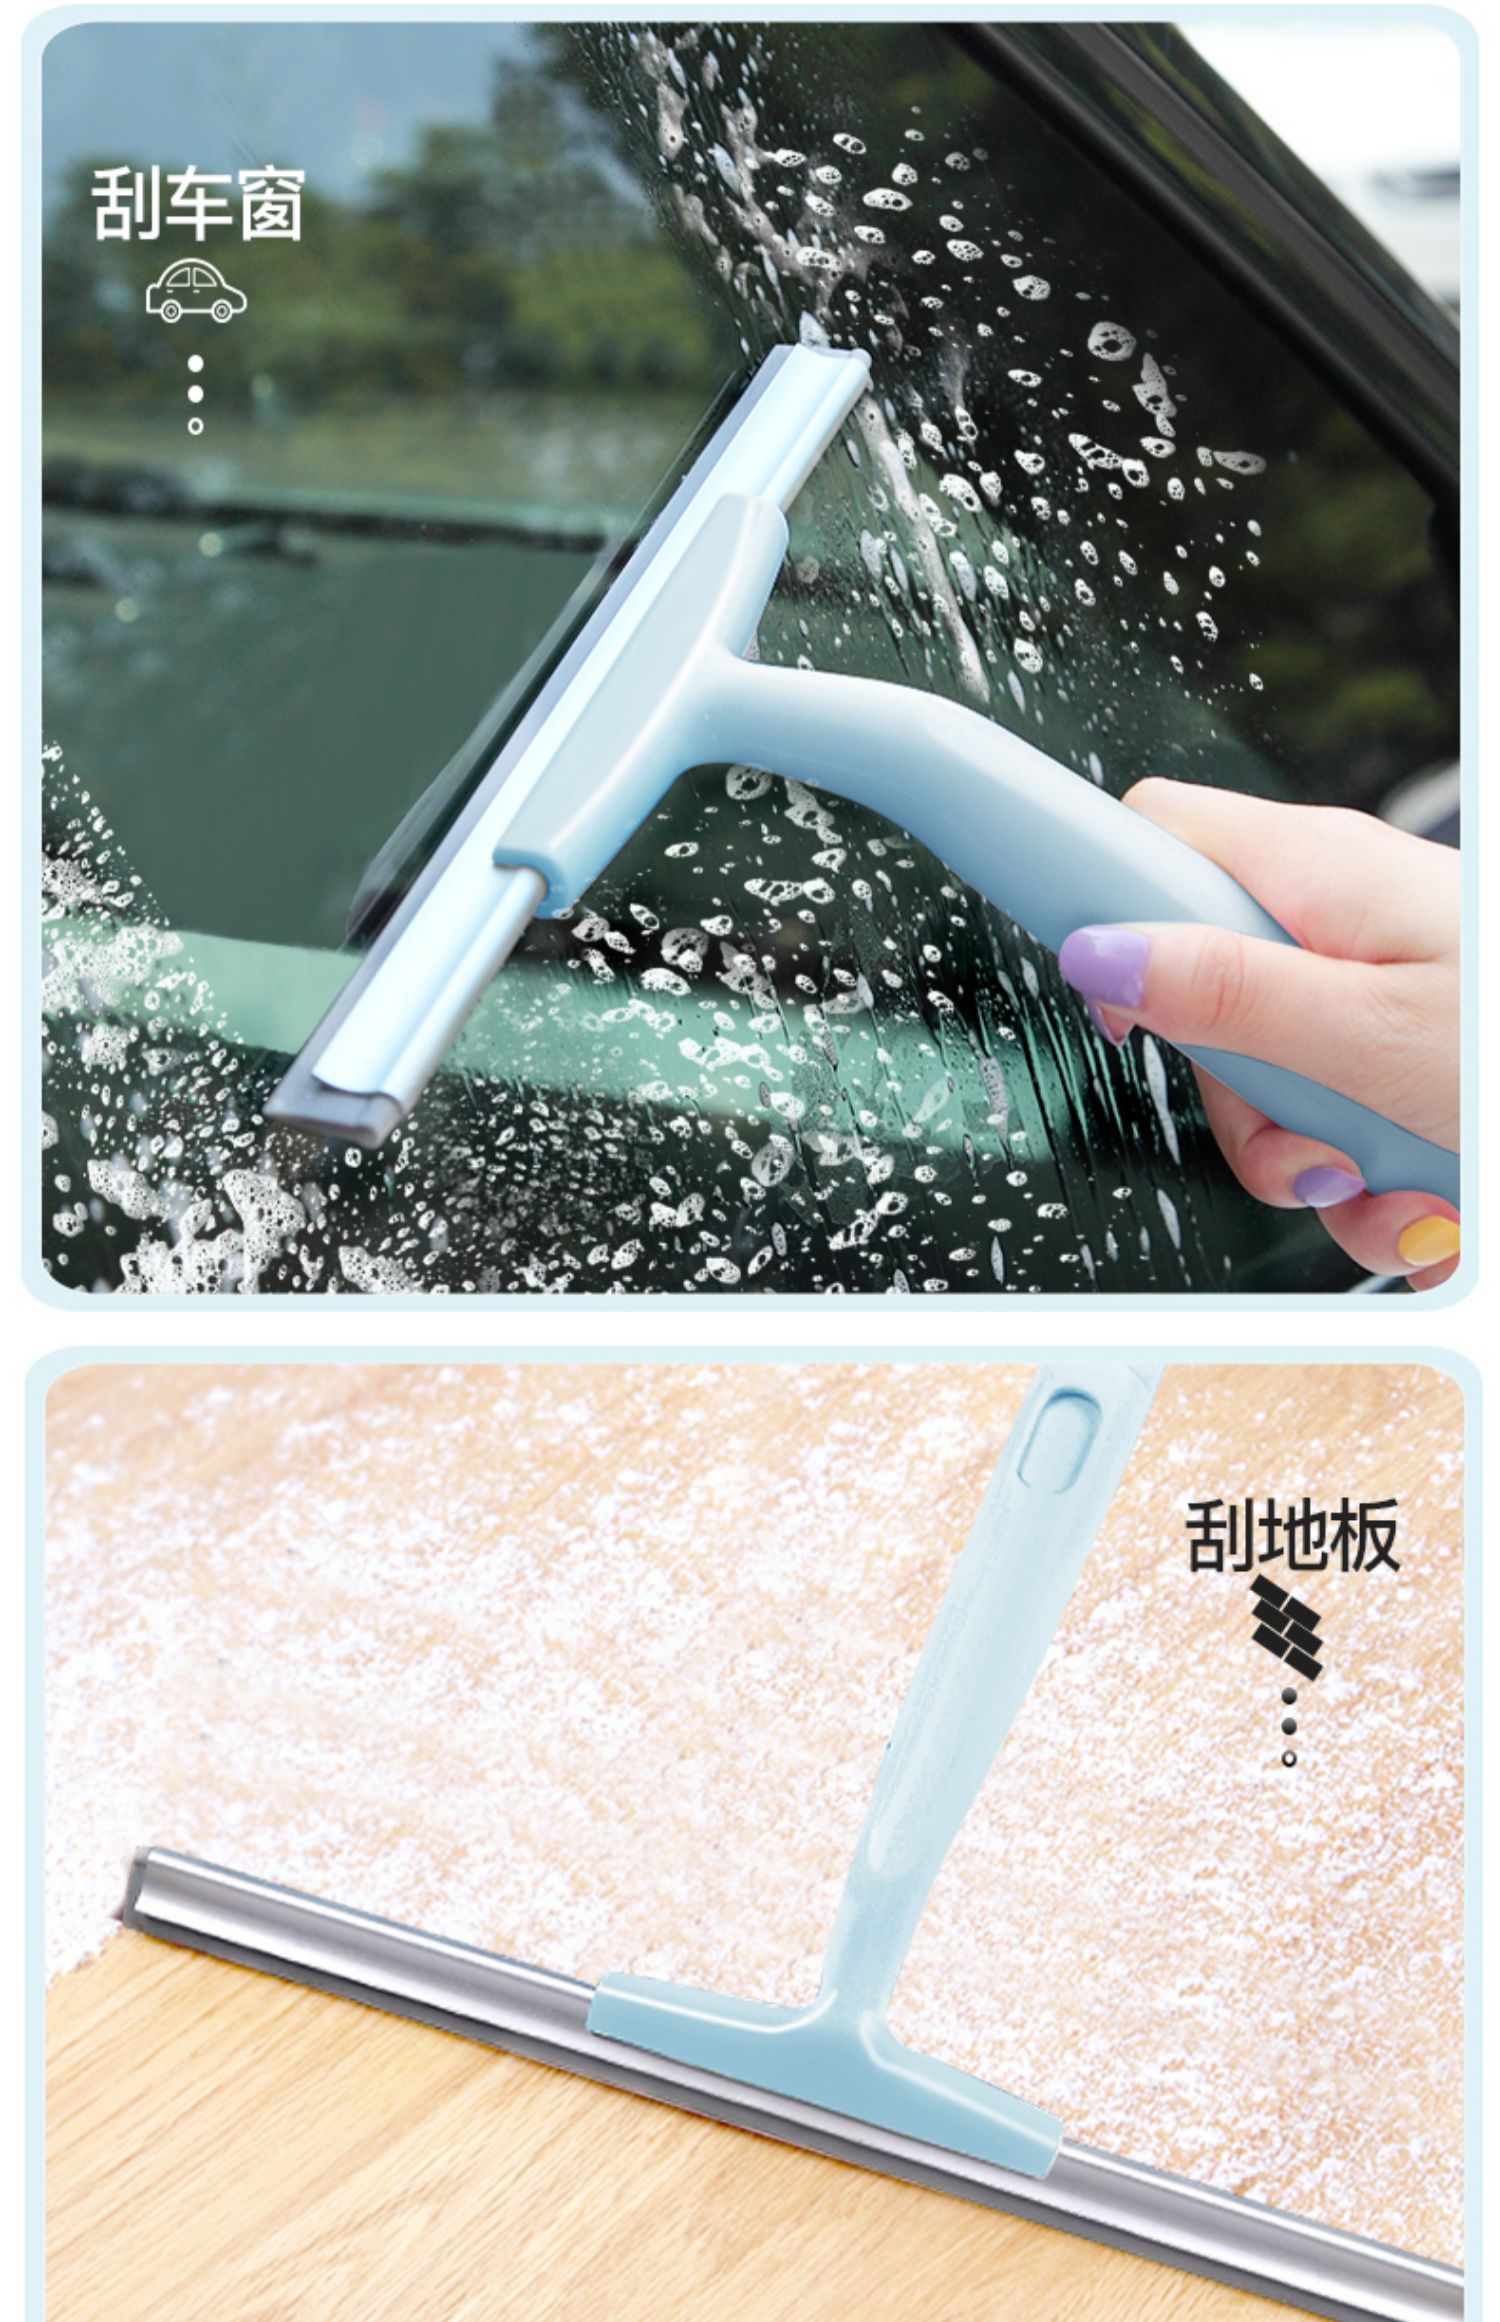 刮玻璃器洗玻璃刮水器家用保洁专用刮刀擦窗器刮板 yicheng 豪华款